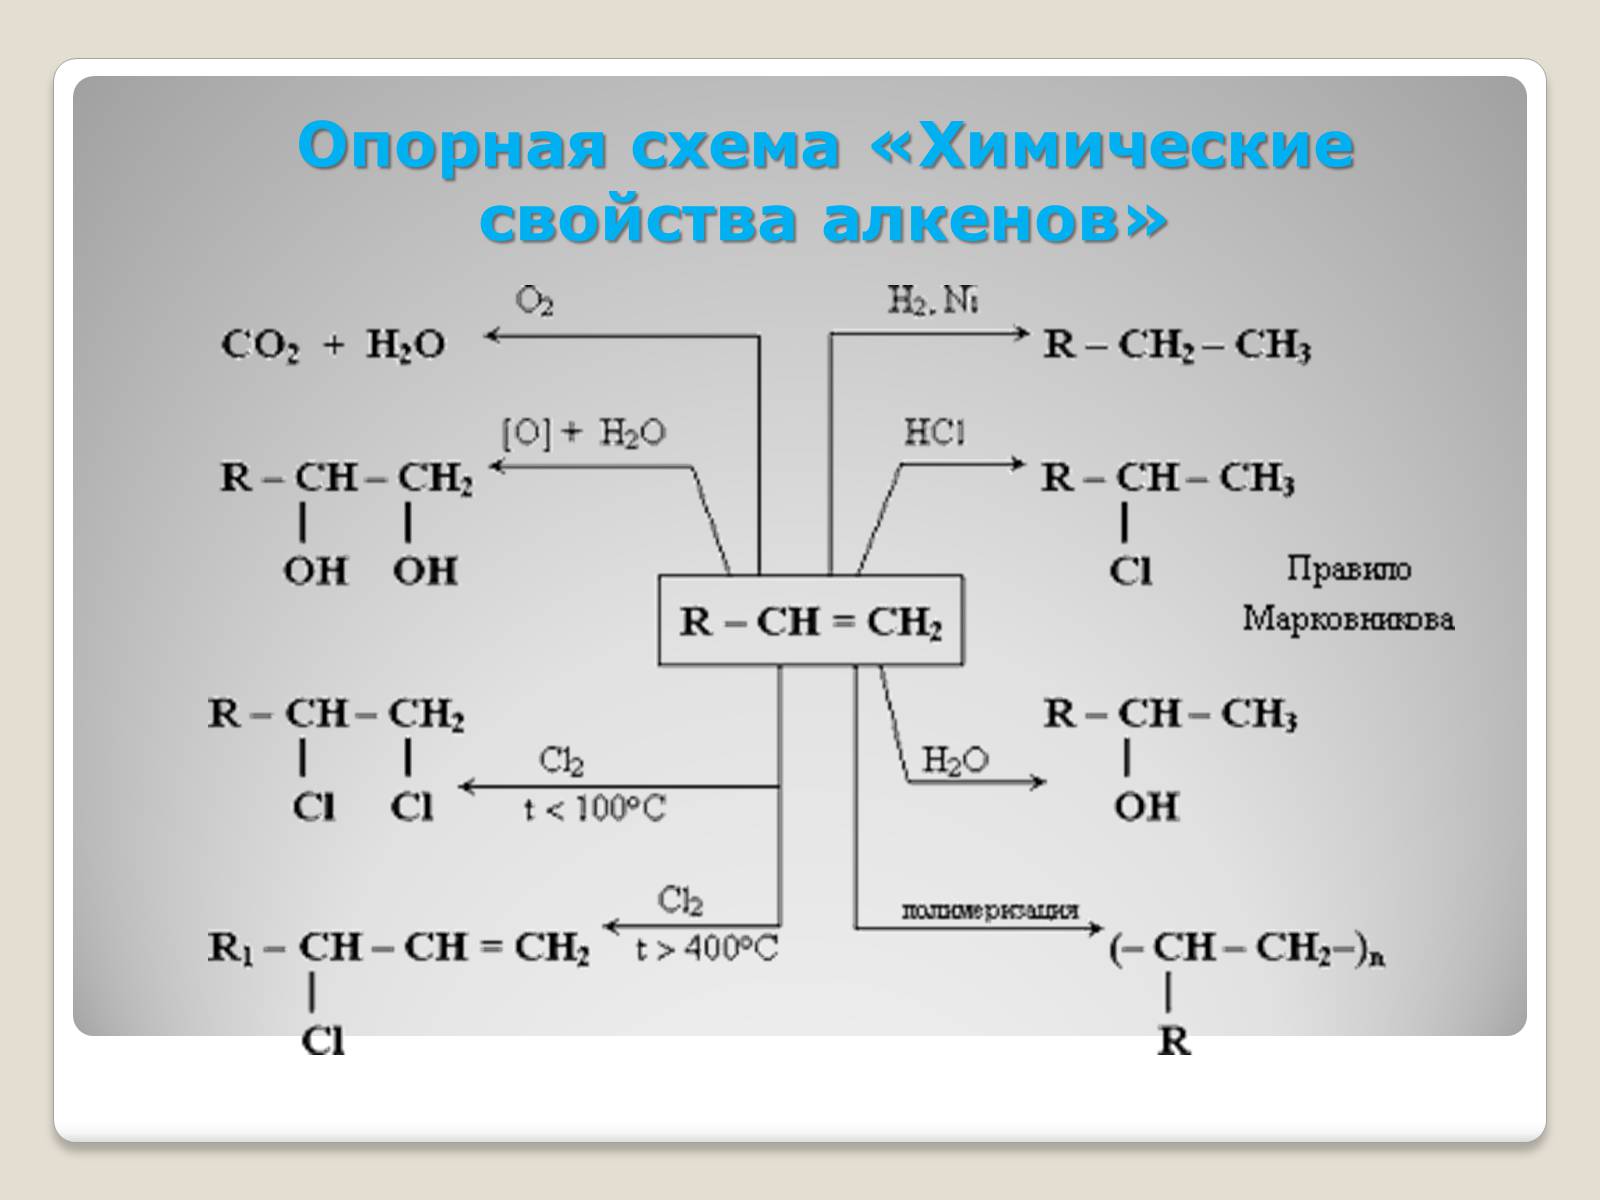 Кроссворд алканы. Схема алкенов. Химичесие свойства алкинов. Химические свойства алкенов. Химические свойства алкинов схема.